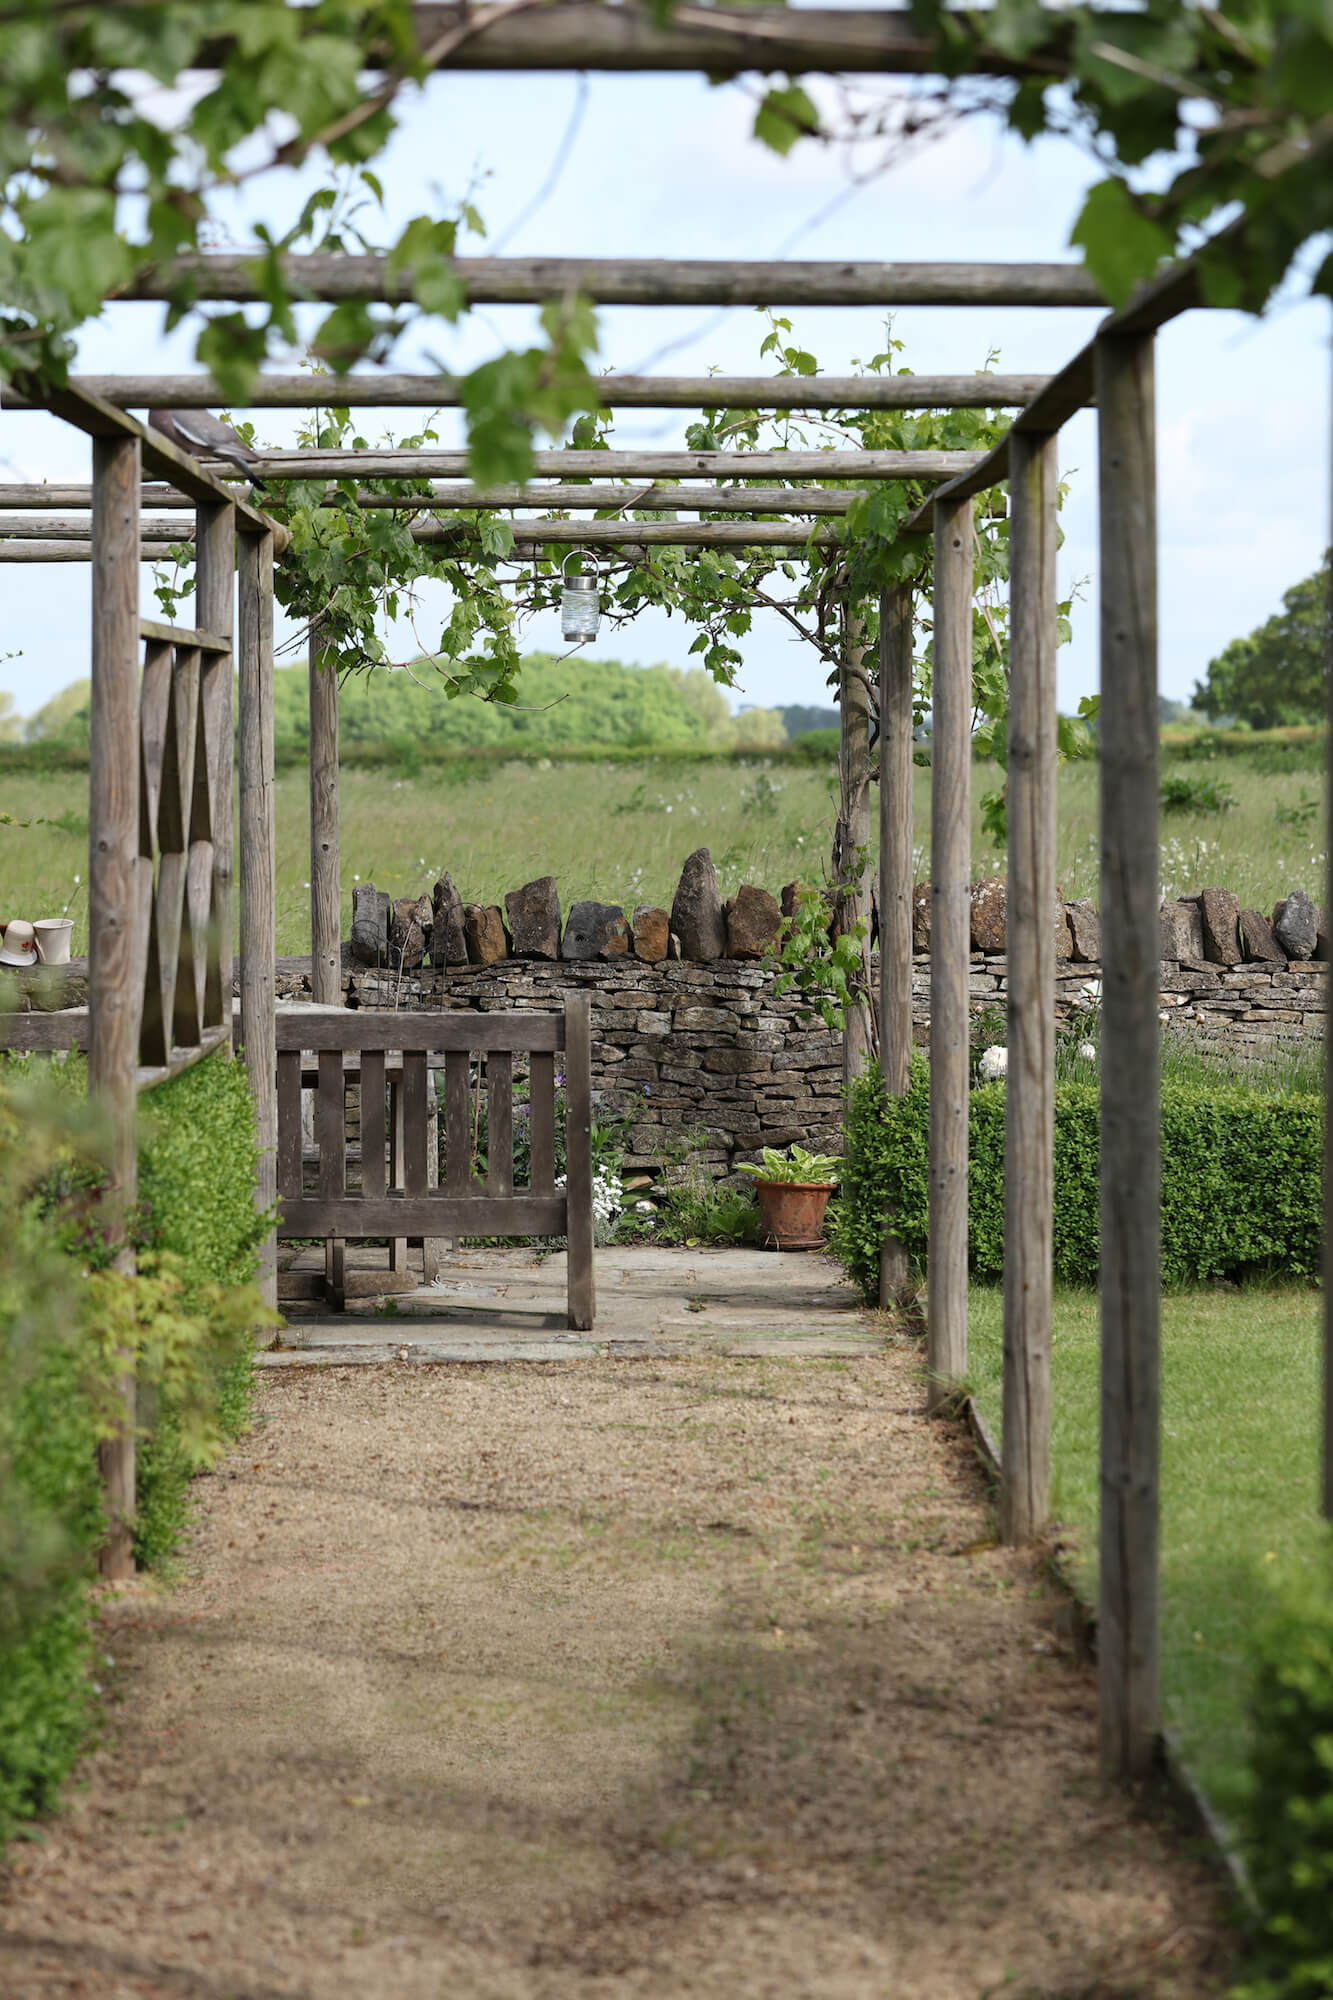 grape vines growing on pergola walkway garden